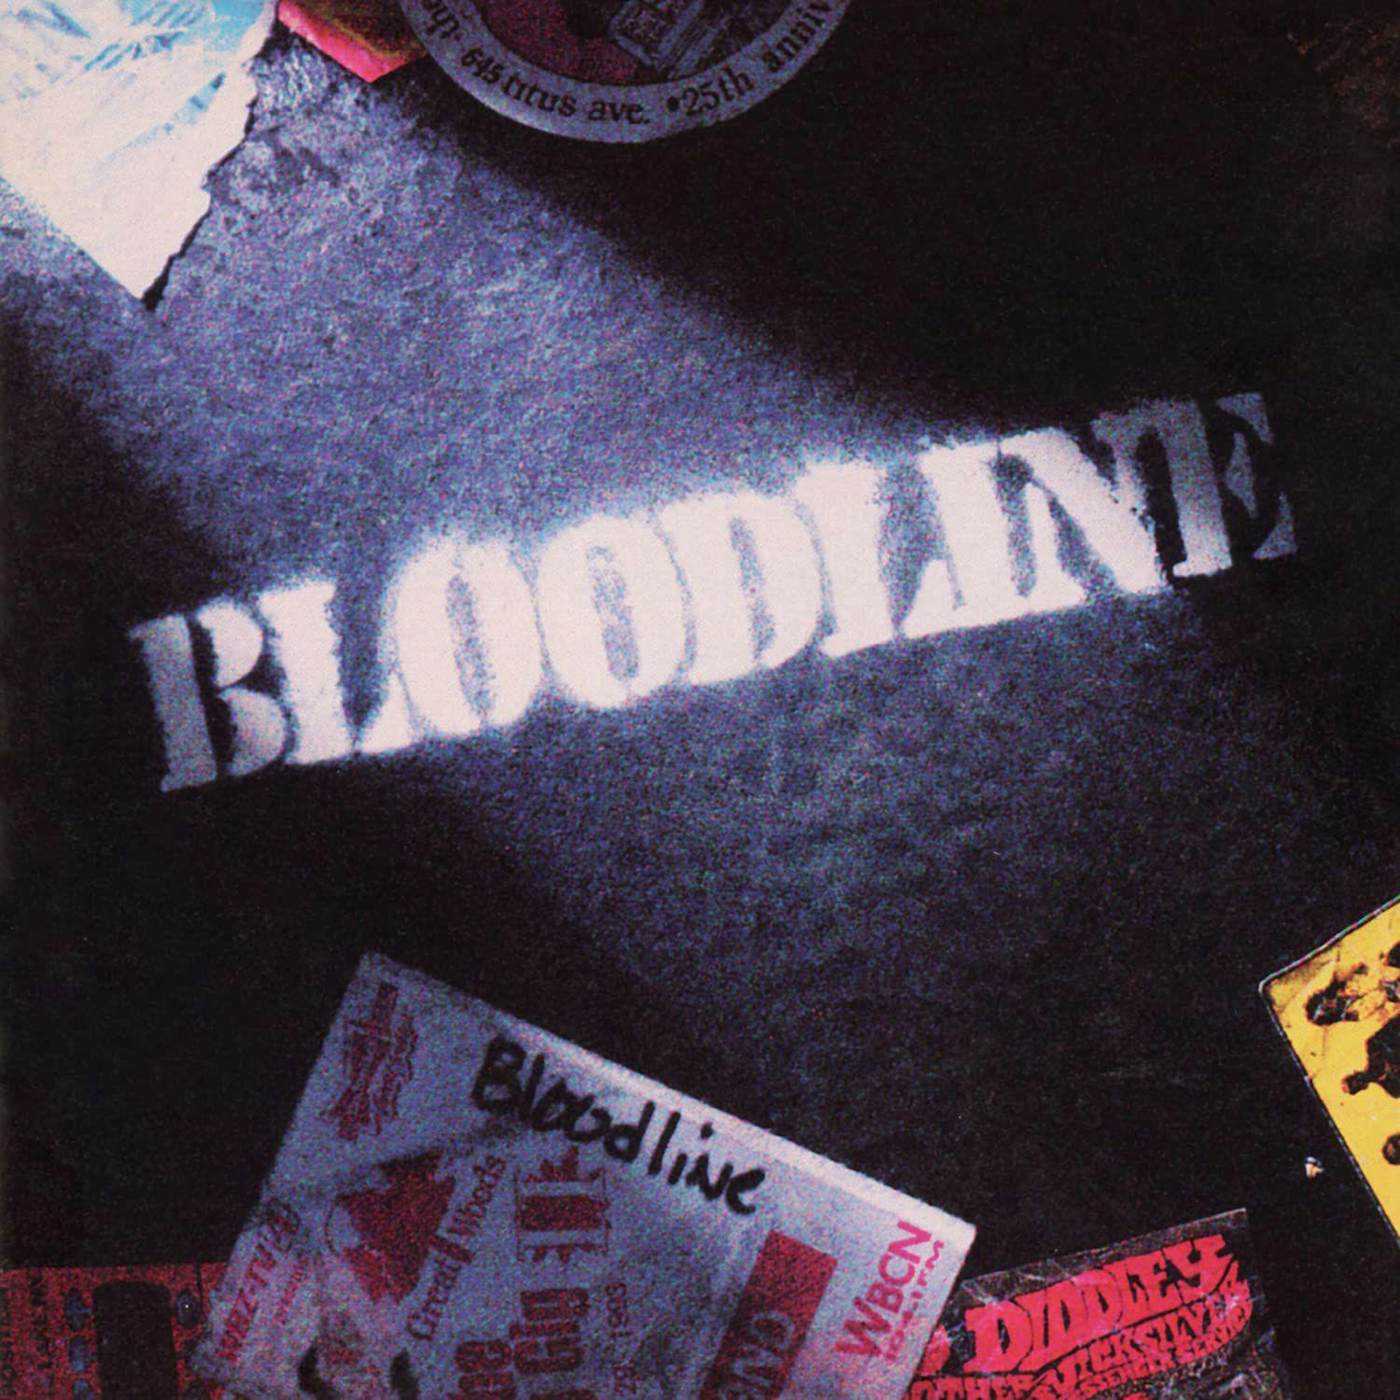 BLOODLINE (2LP/180G) Vinyl Record